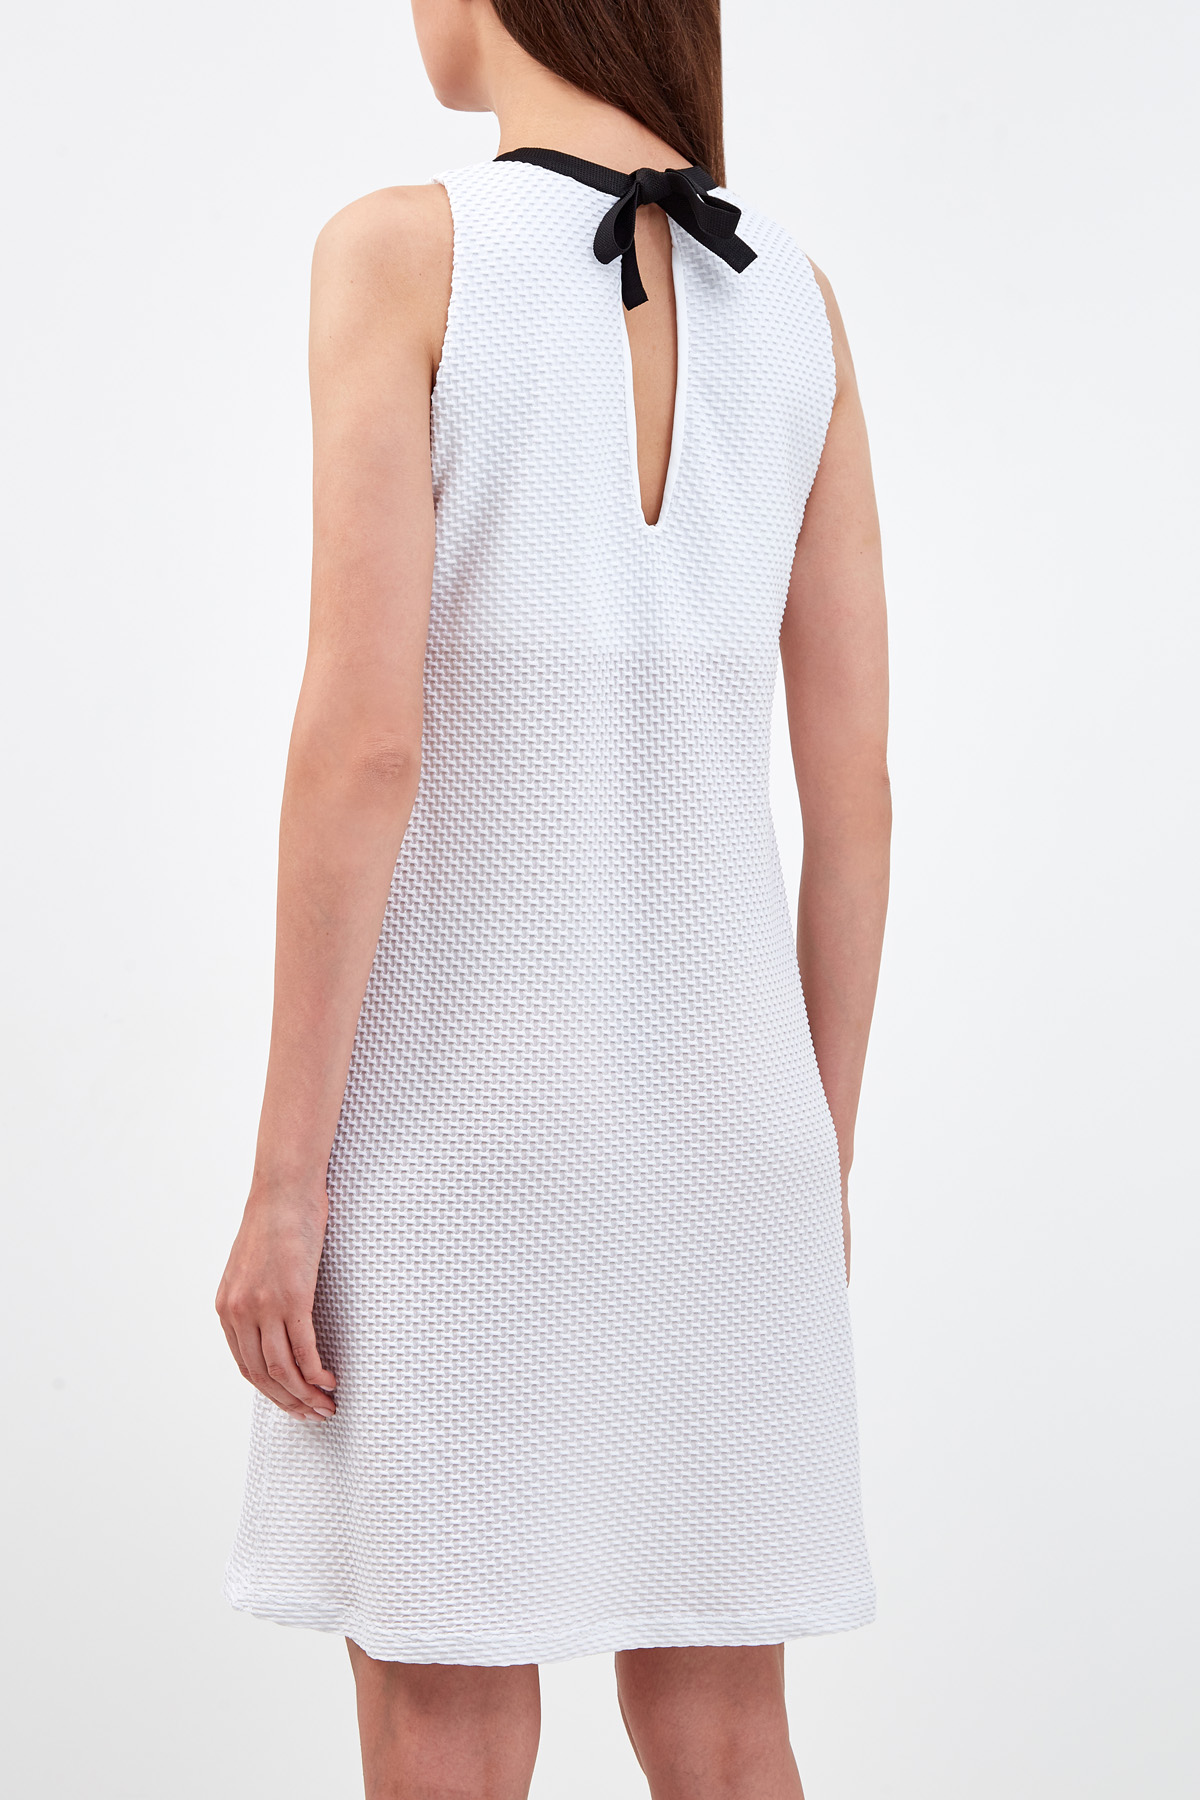 Платье-мини из эластичной быстросохнущей микрофибры с контрастной окантовкой FISICO, цвет белый, размер S;L - фото 4